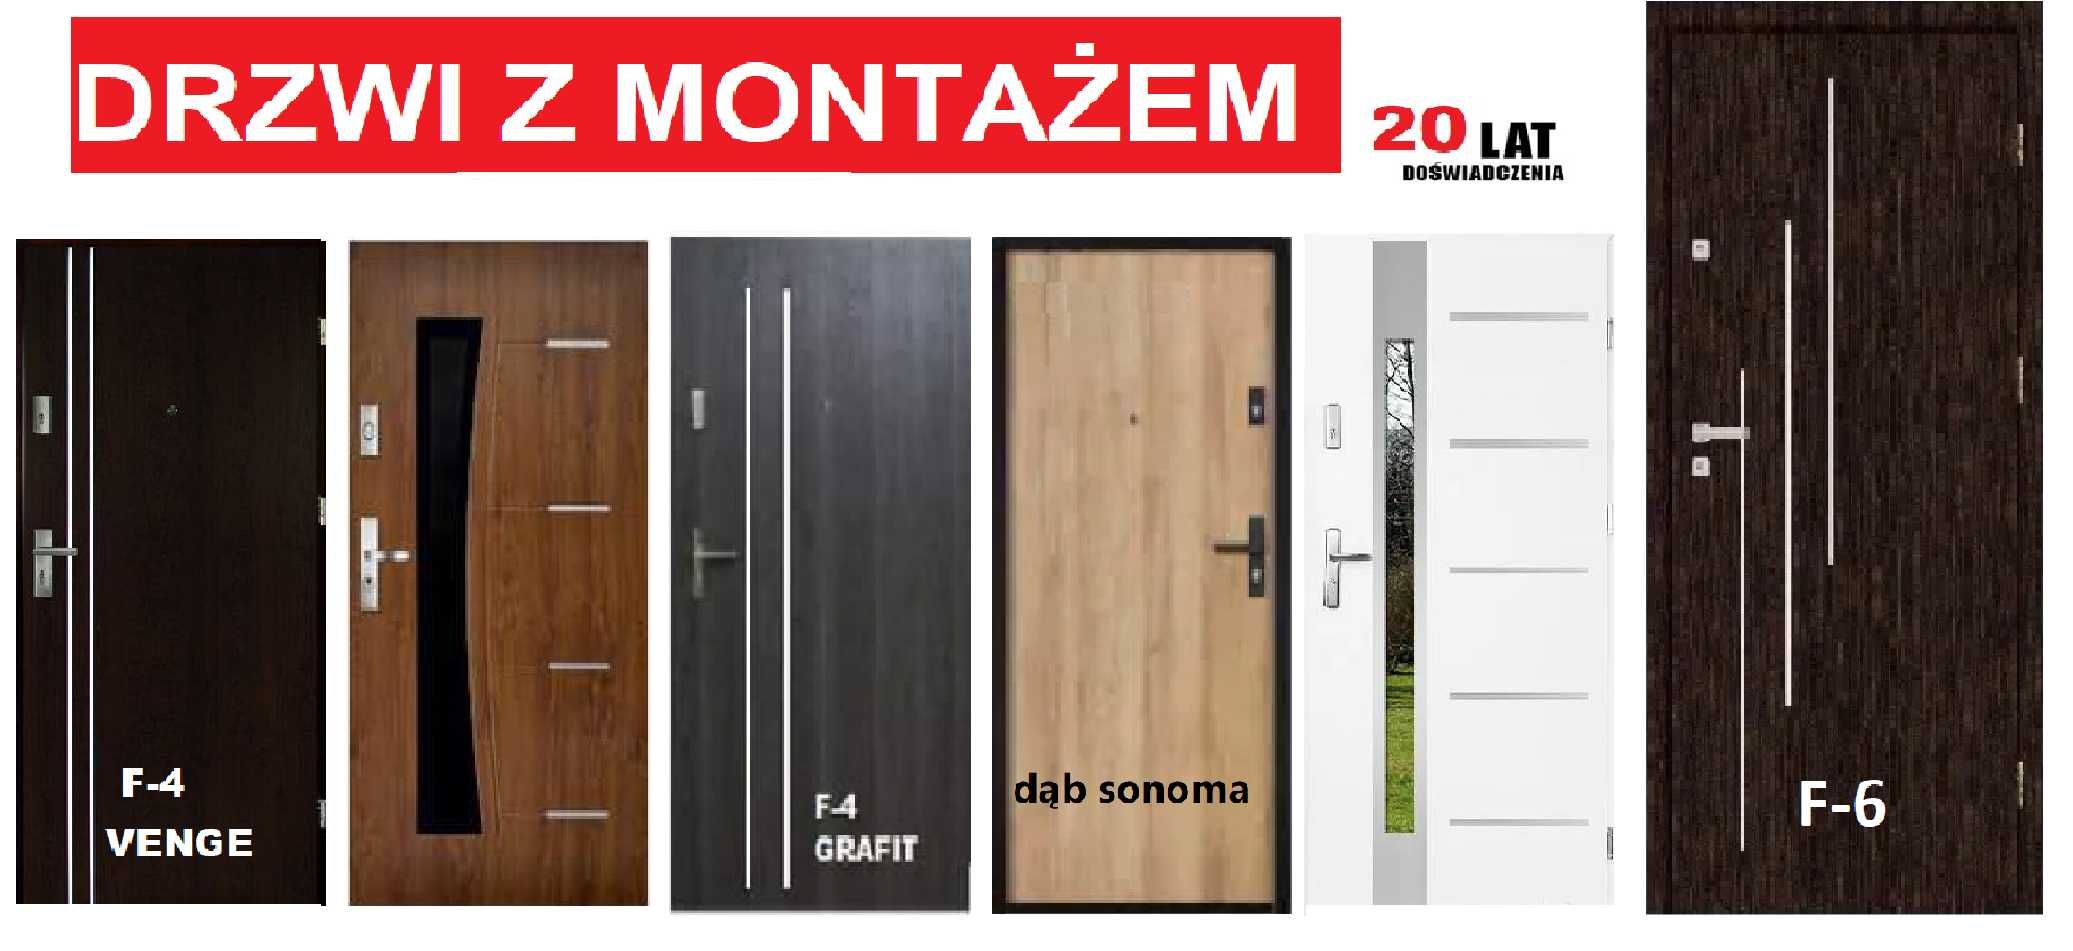 Drzwi ZEWNĘTRZNE-wejściowe do mieszkania Z MONTAŹEM-wewnątrzklatkowe.